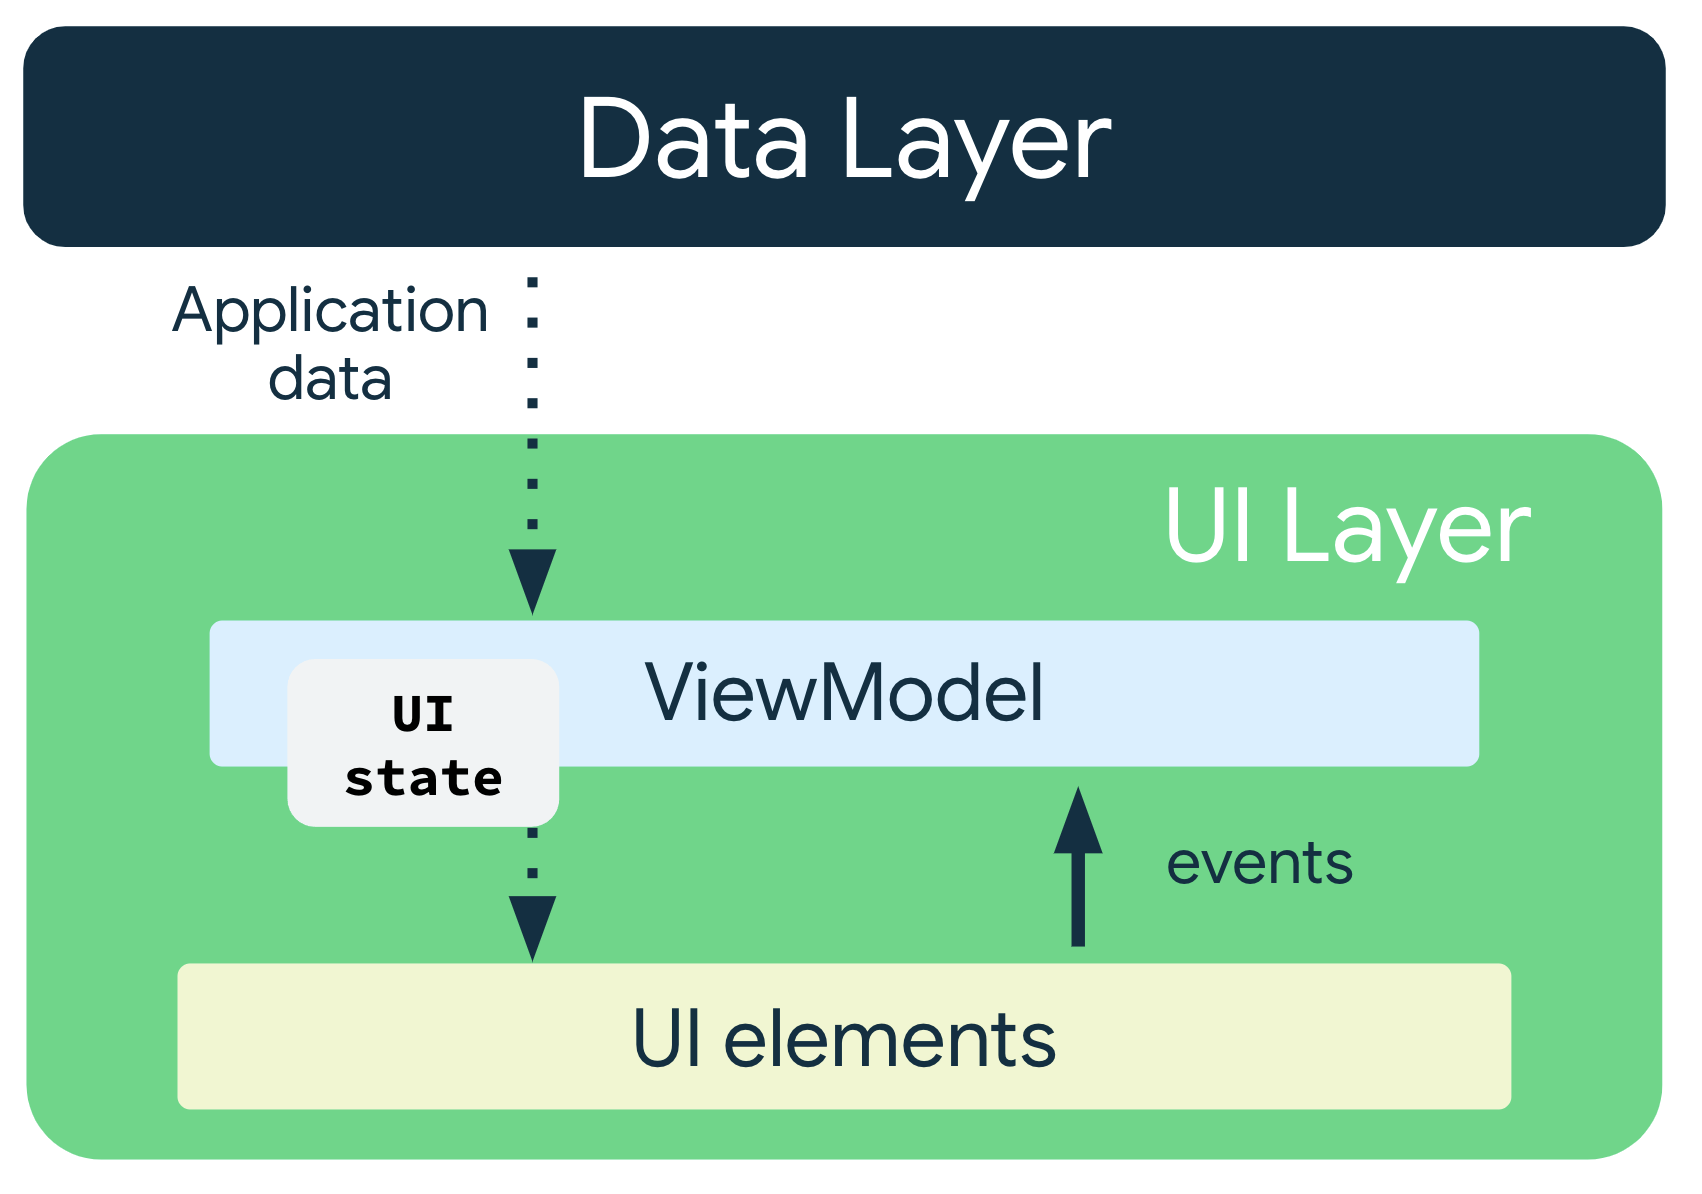 Os dados do app fluem da camada de dados para a ViewModel. O estado da IU
    flui da ViewModel para os elementos da IU, e os eventos fluem dos elementos da
    IU de volta para a ViewModel.